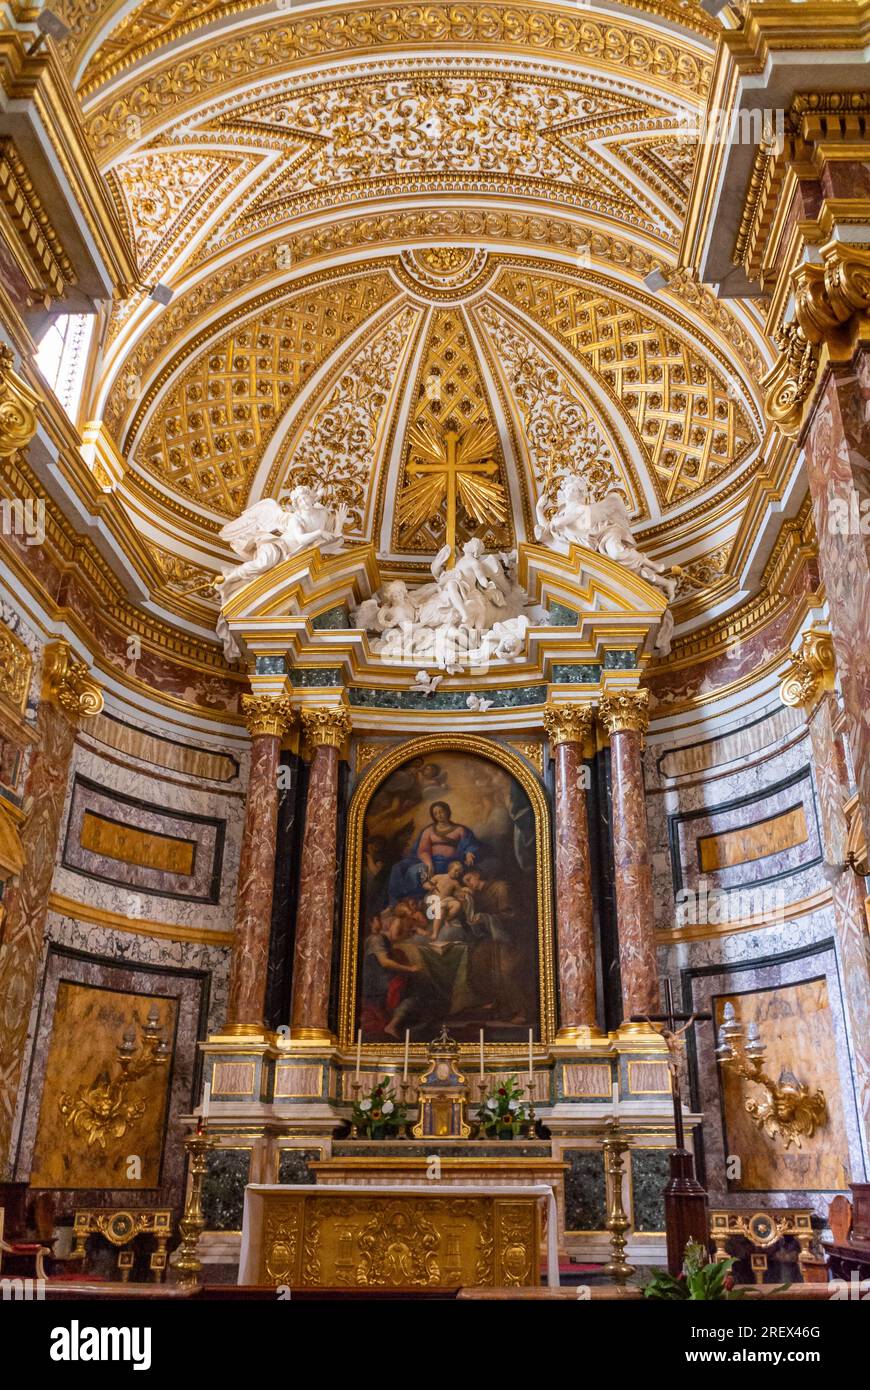 Rome, Lazio, Italy, The interior decoration of the church of saint anthony of the portuguese, (in Italian;  chiesa di sant'antonio dei portoghesi). Stock Photo